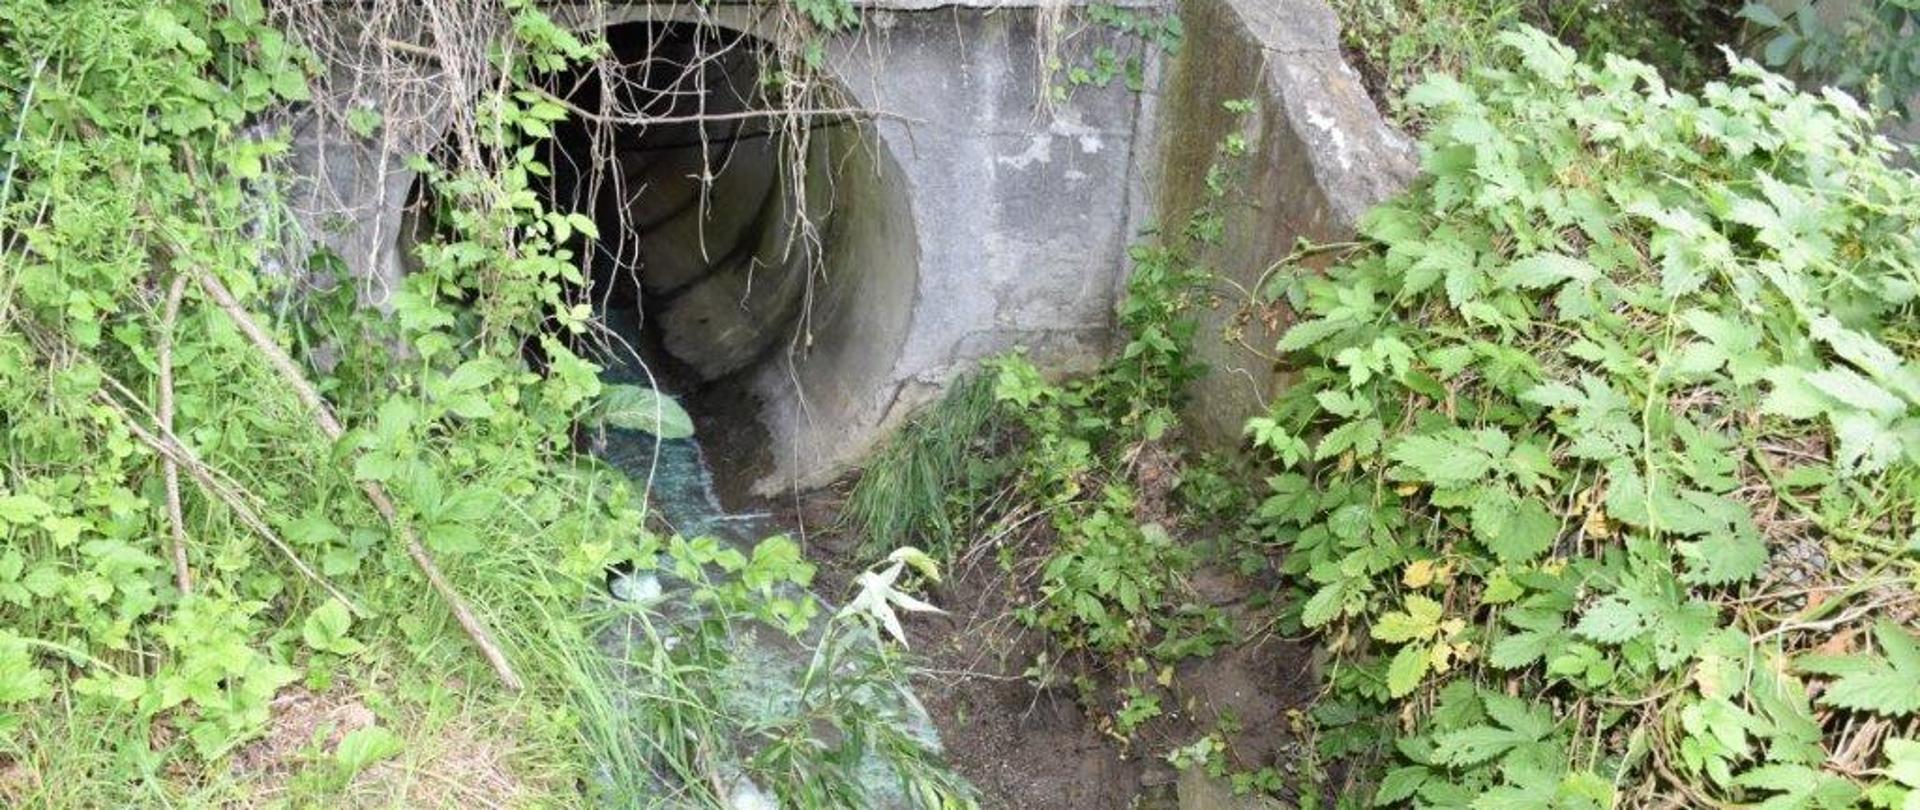 Kanał betonowy obrośnięty zielenią z którego wypływa zanieczyszczona woda